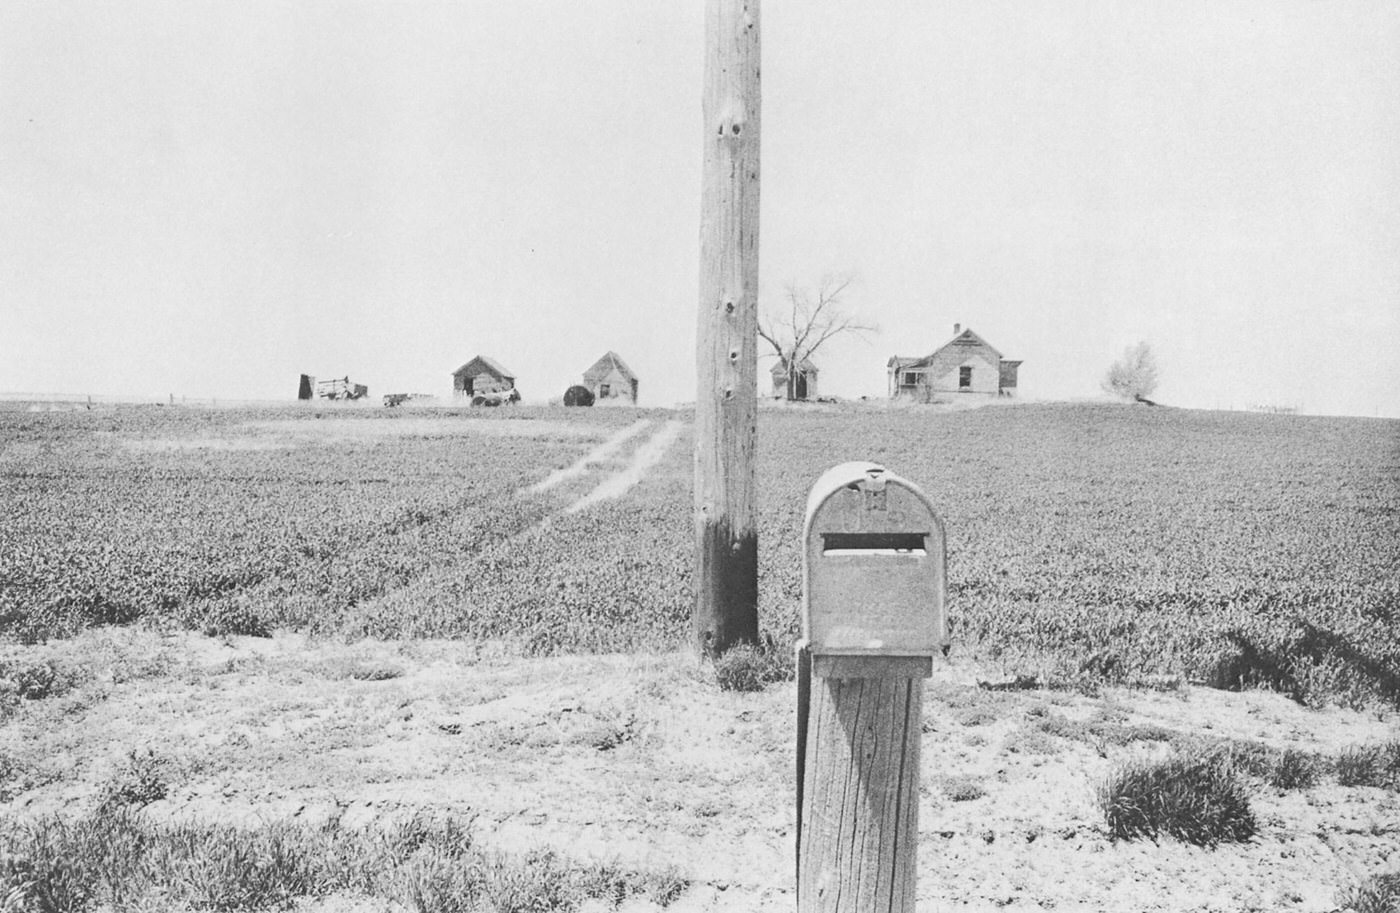 U.S. 30 between Ogallala and North Platte, Nebraska, 1956